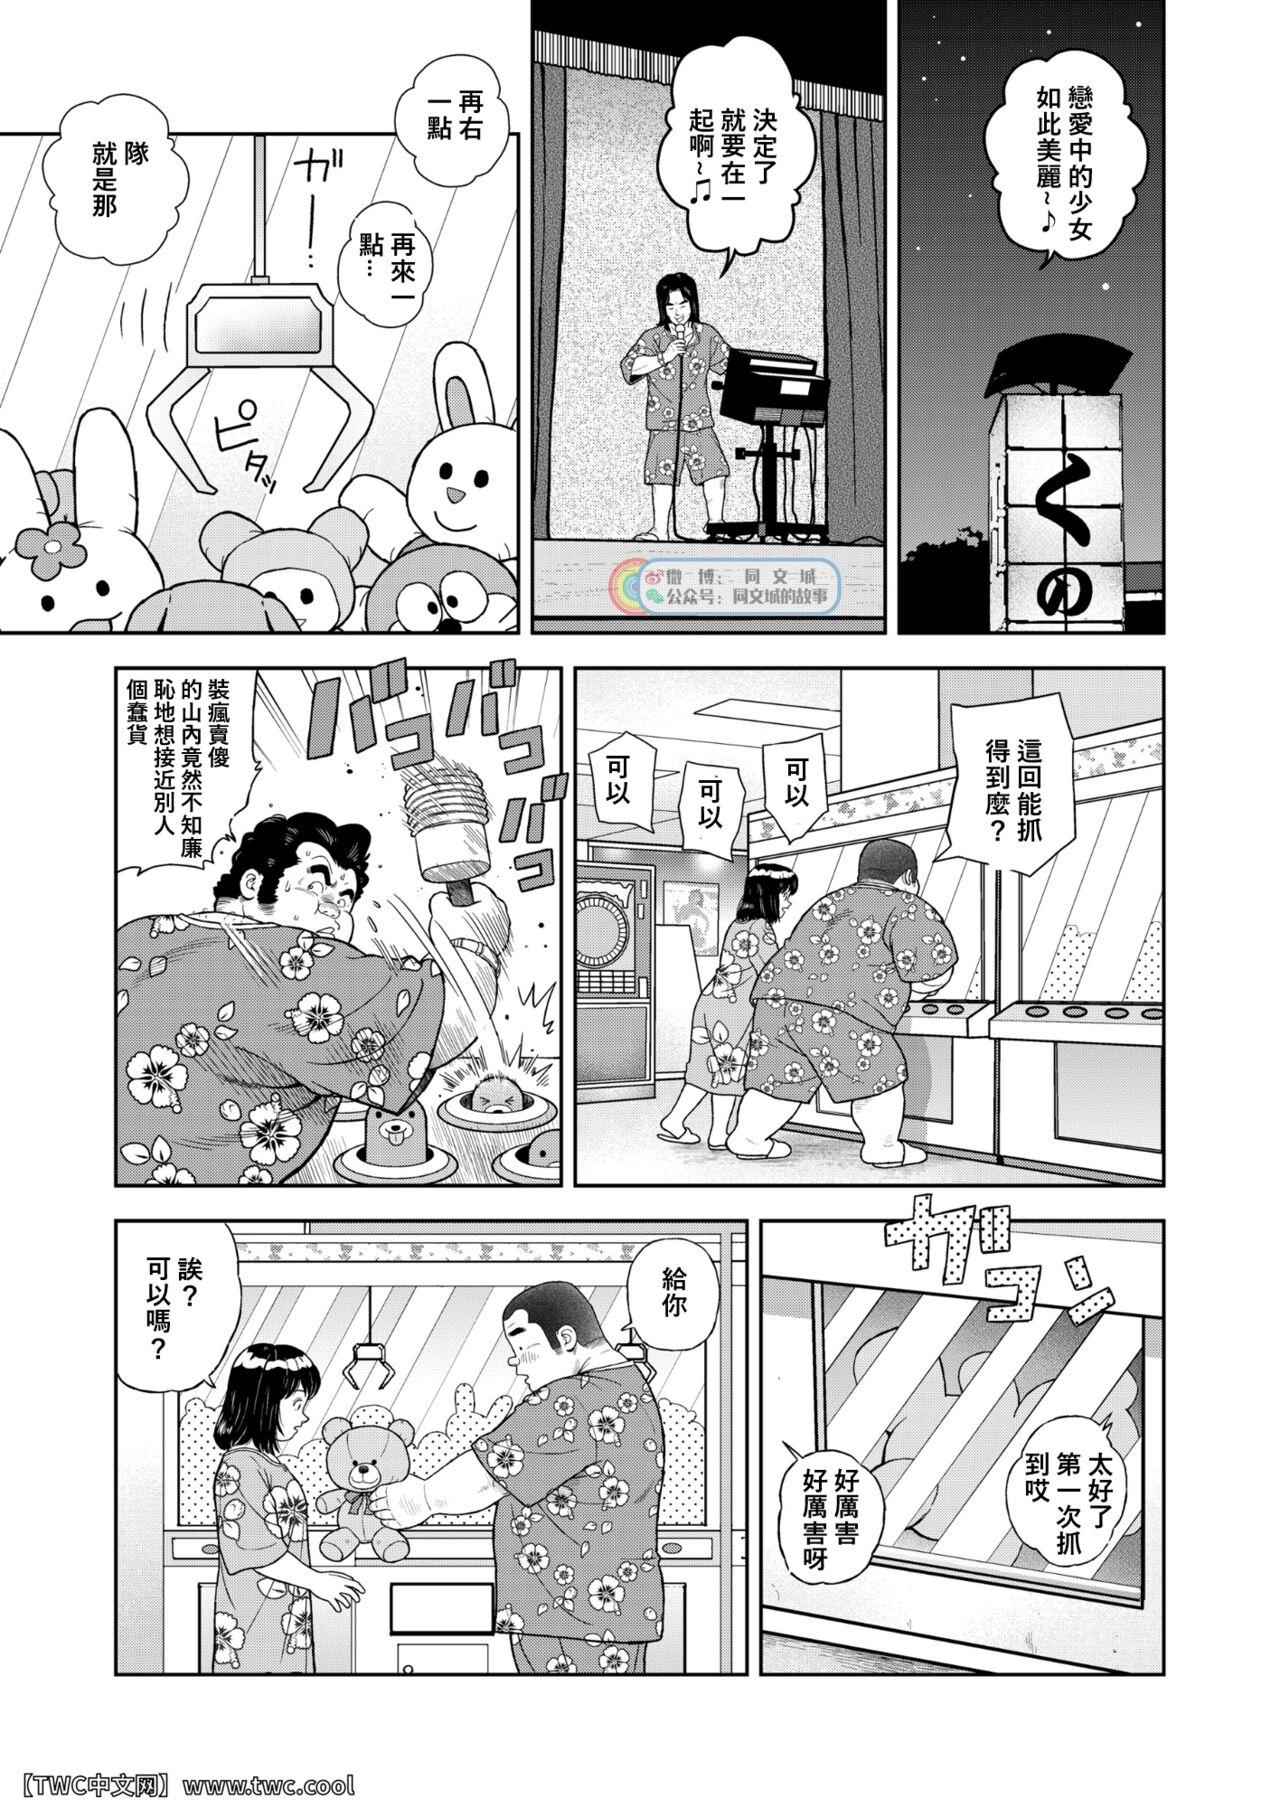 Home Kunoyu Nijyunanahatsume Anokane o Narasunohadonata - Original Eat - Page 5